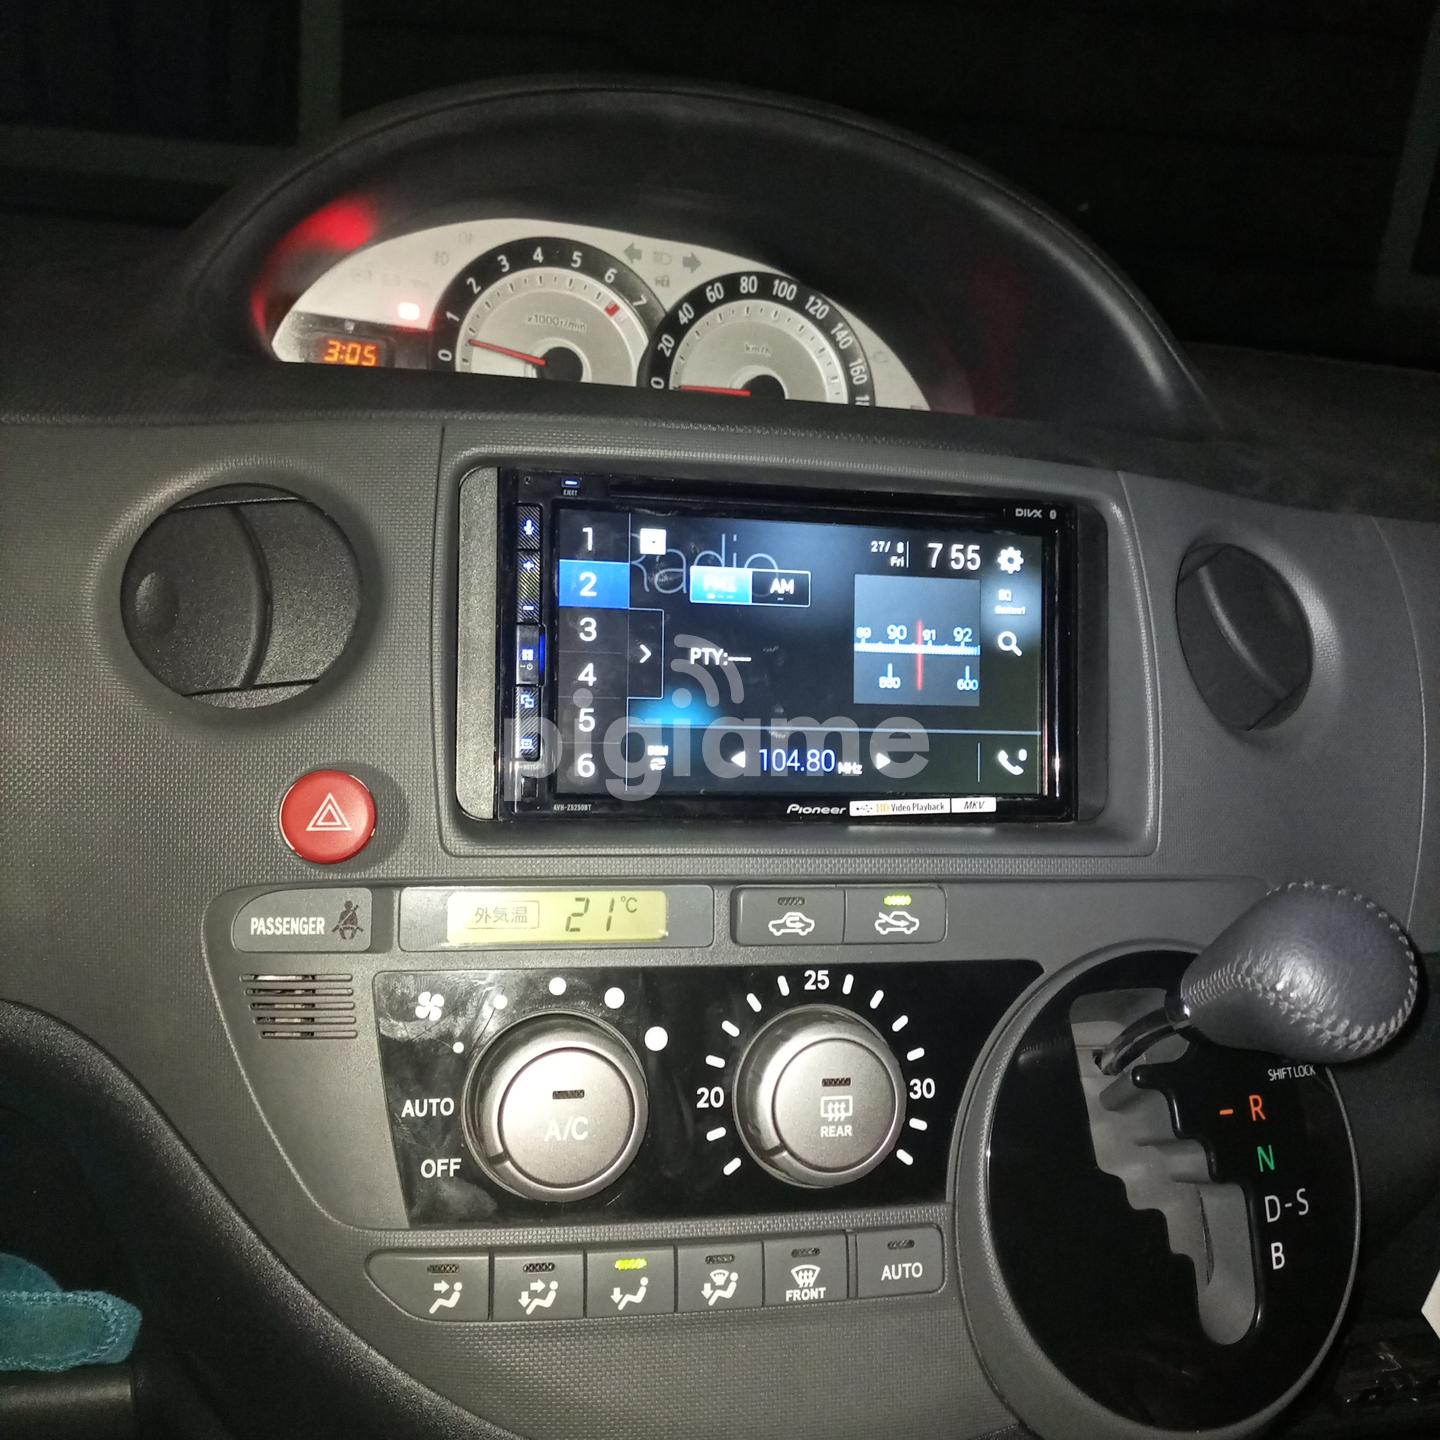 Toyota Sienta Radio System With Android Auto in Nairobi CBD | PigiaMe